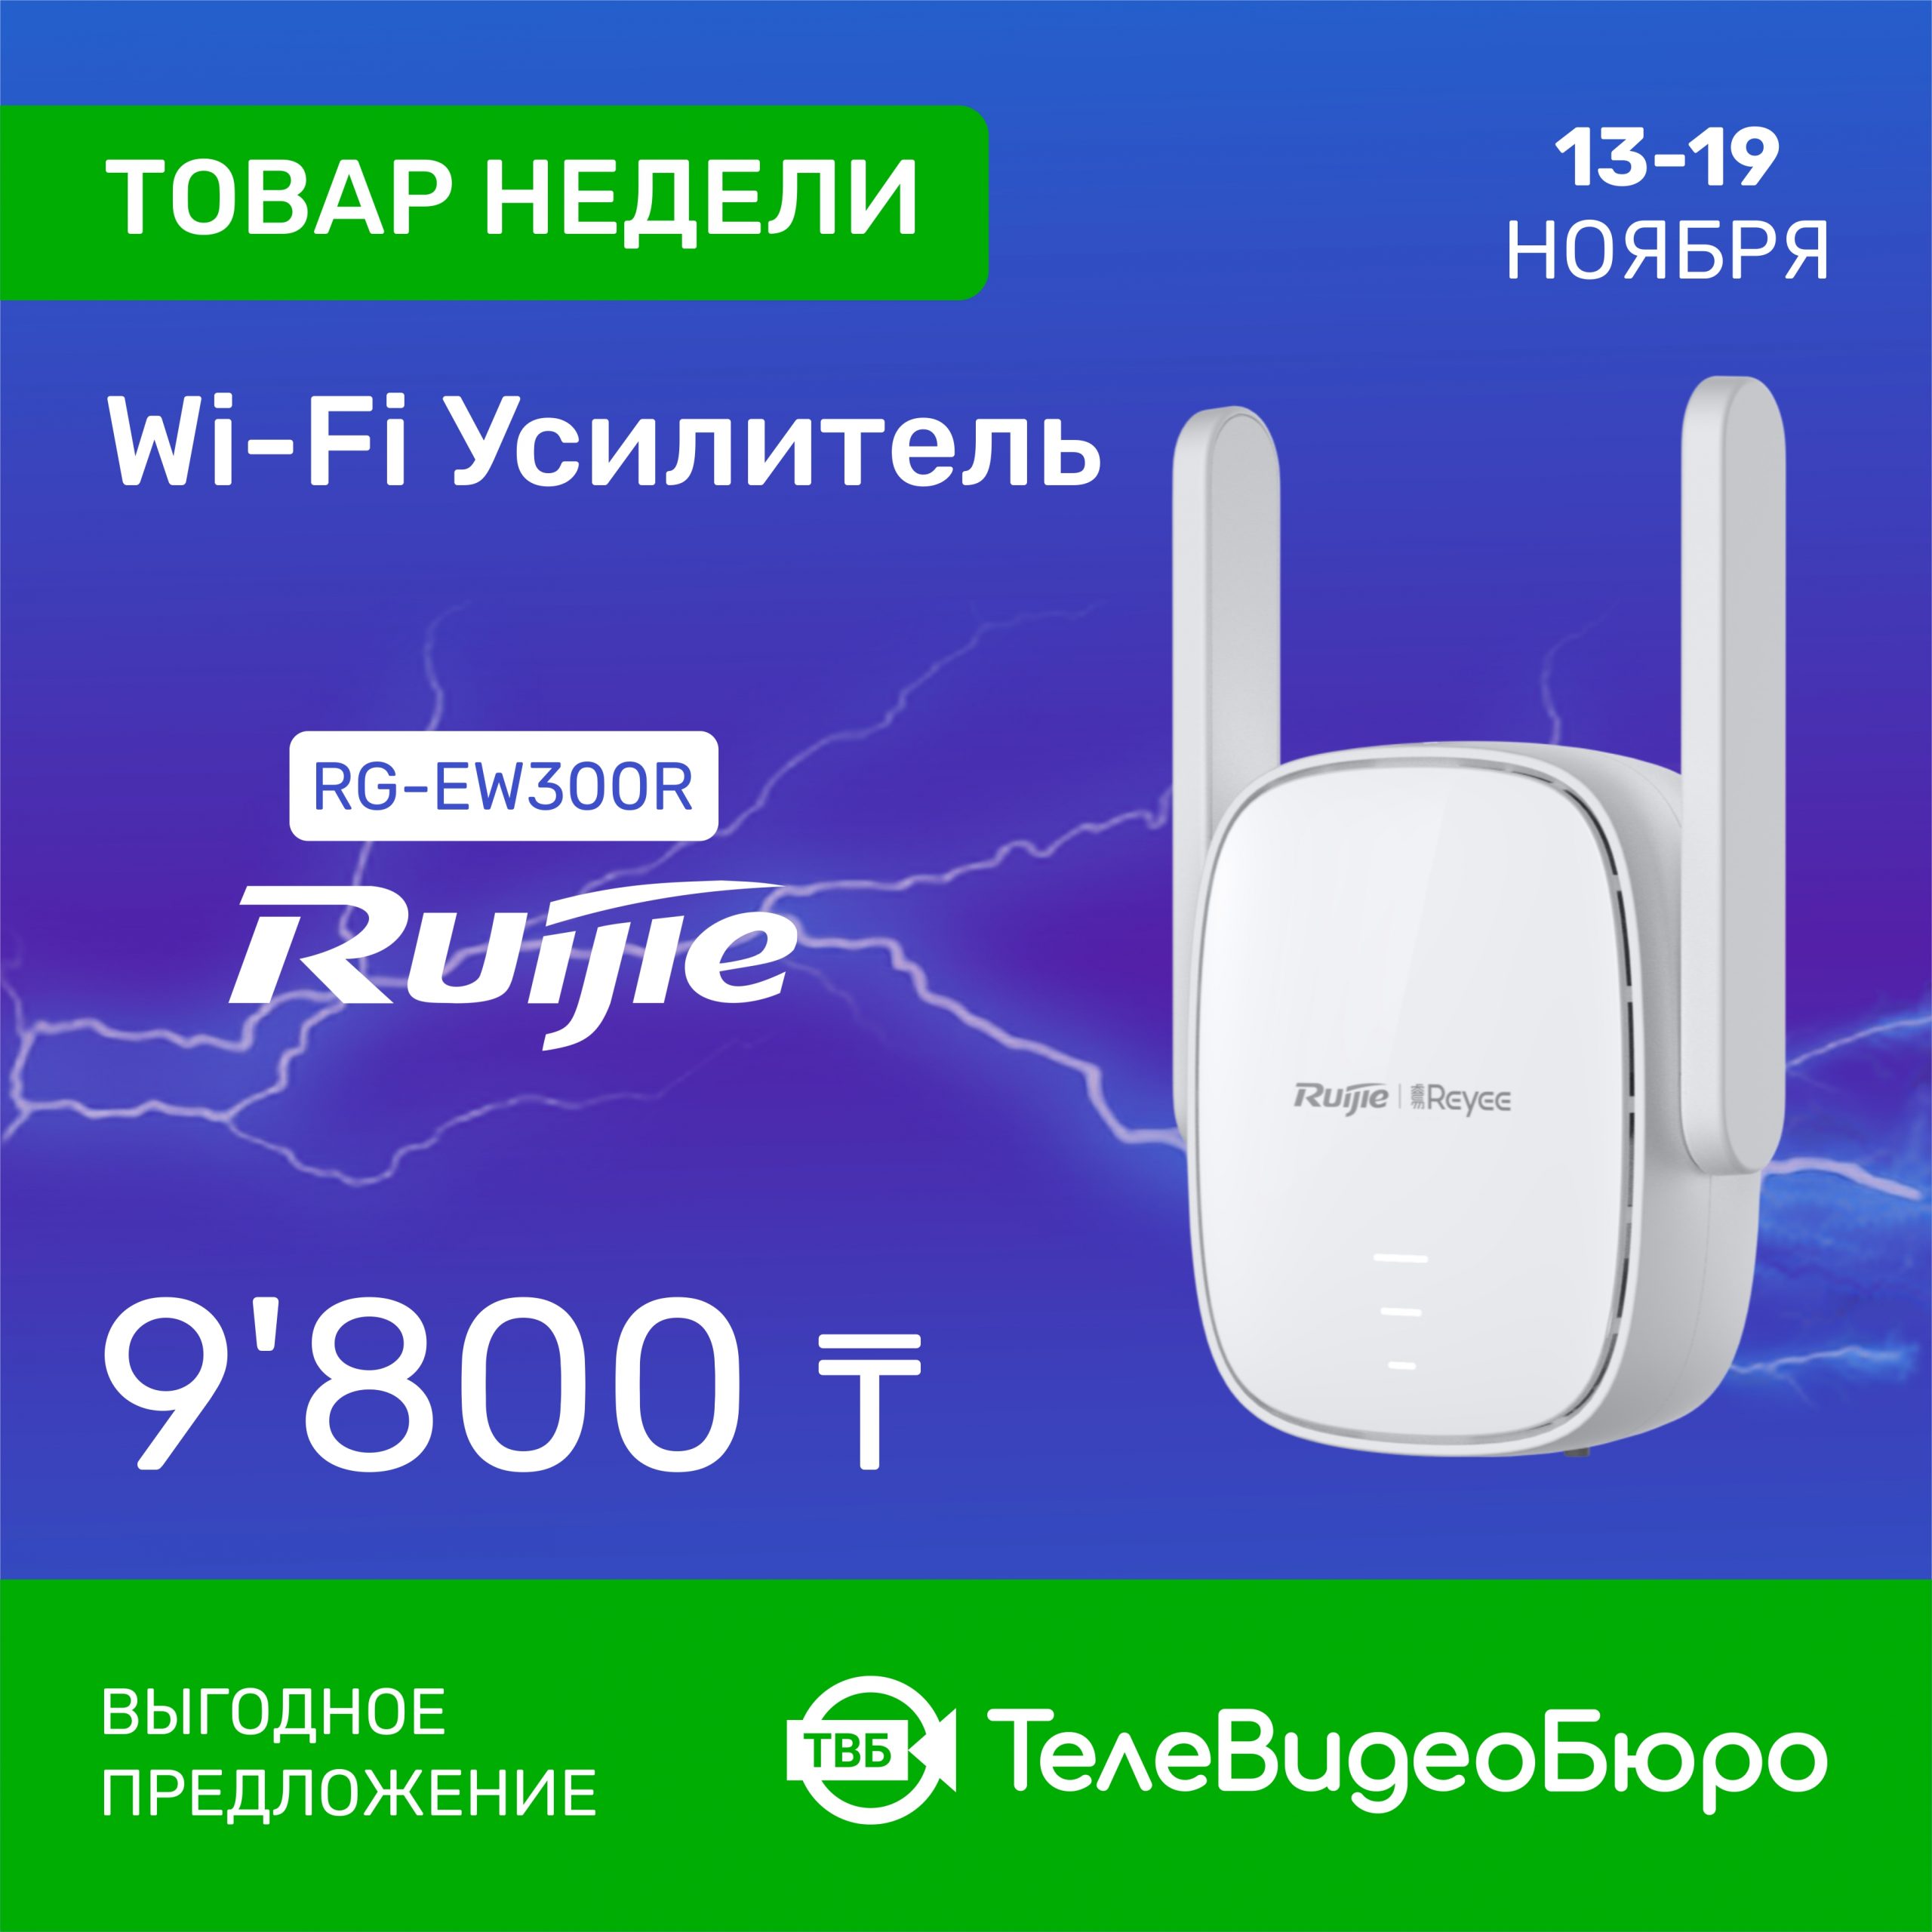 Товар Недели в Магазине Систем Безопасности “ТелеВидеоБюро” – WiFi<br>Усилитель Ruijie | Reyee RG-EW300R!